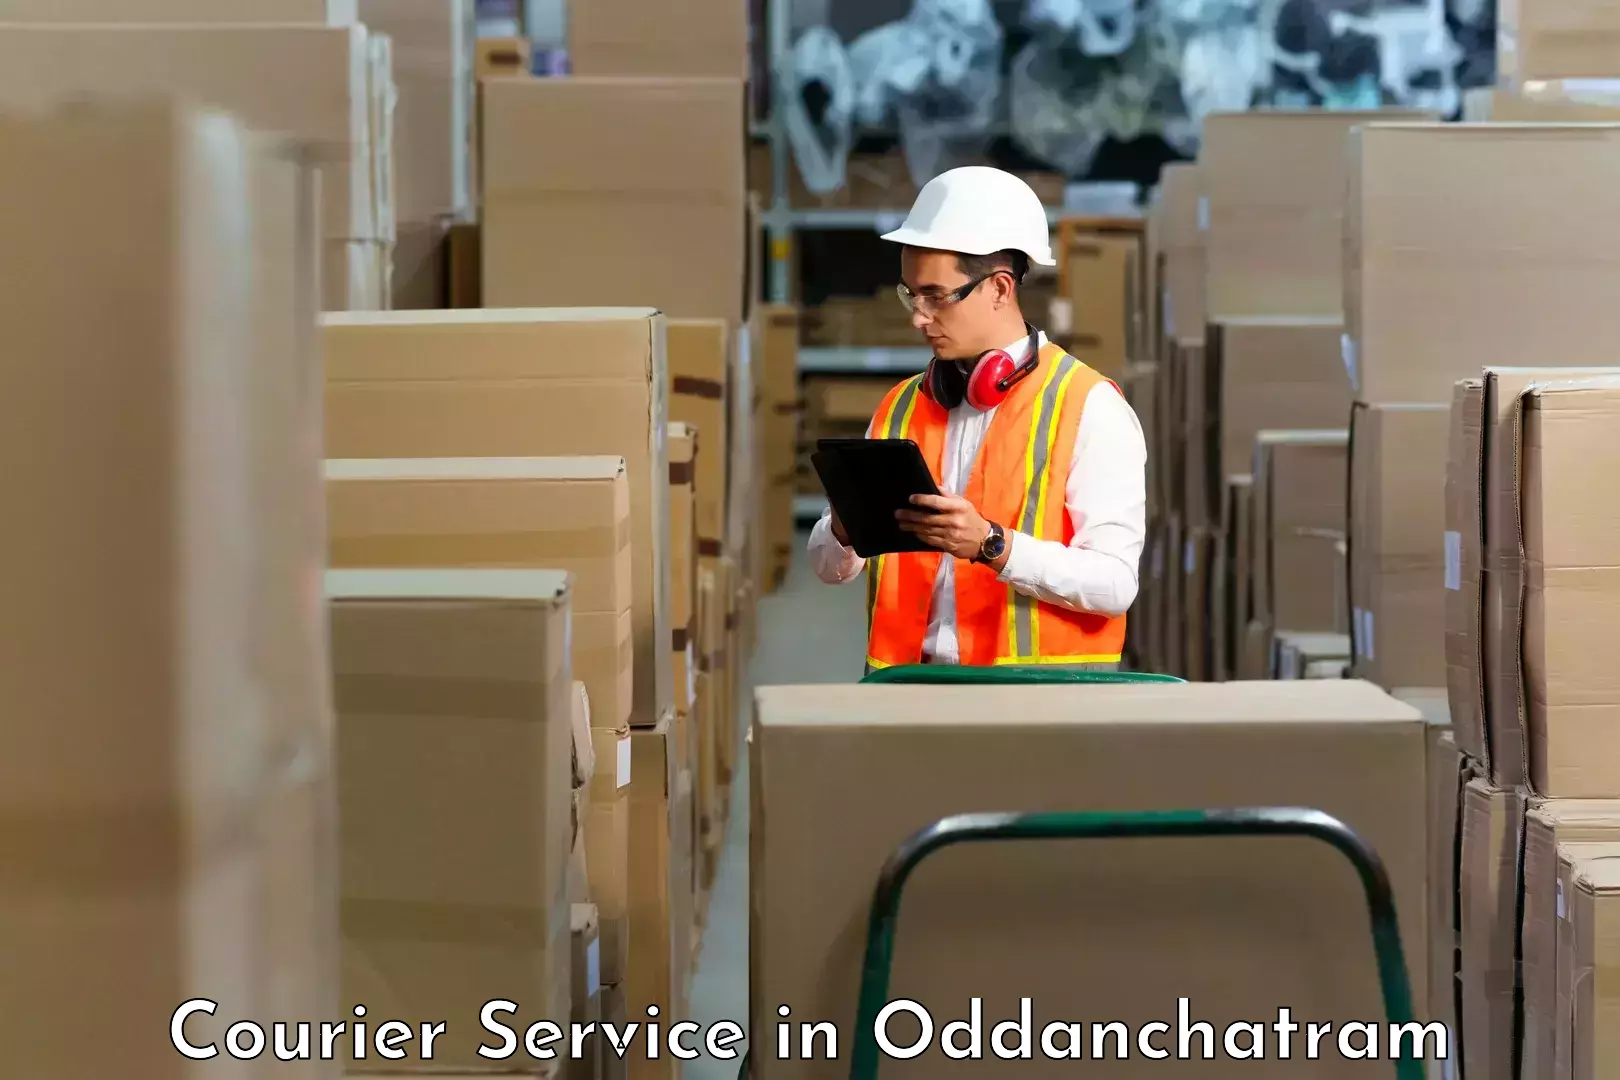 Logistics solutions in Oddanchatram